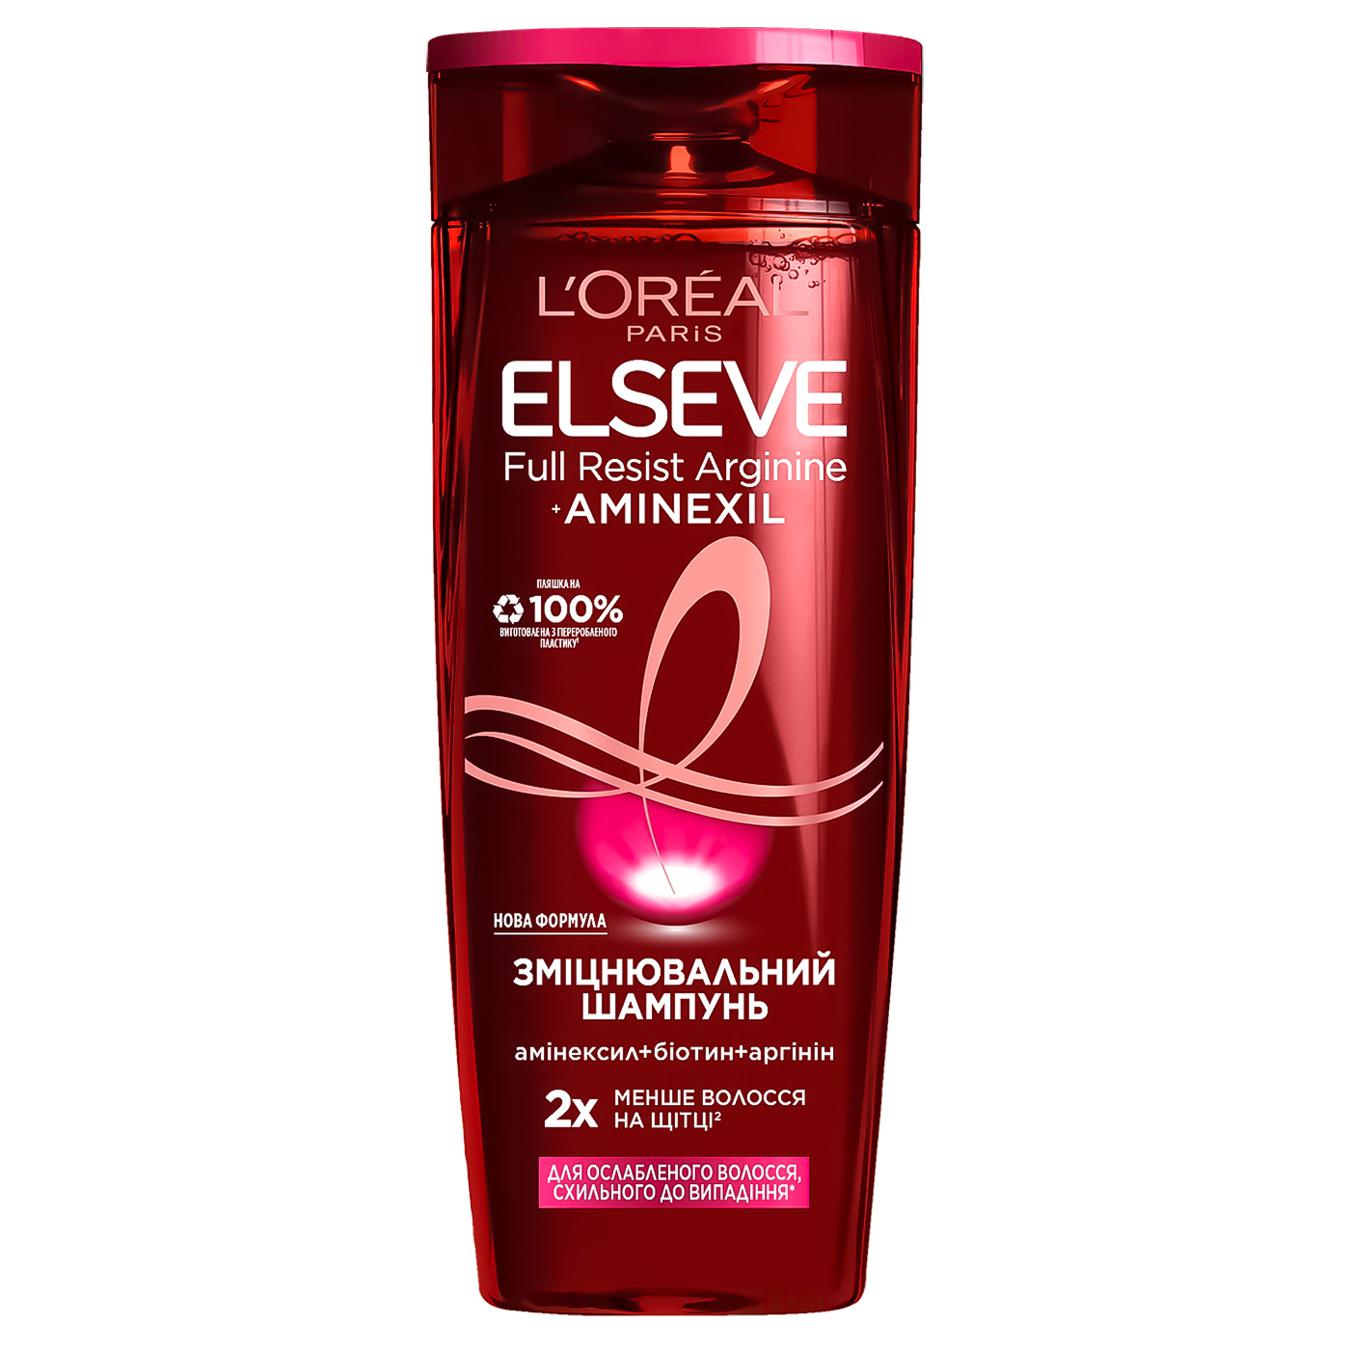 Shampoo Elsev Full Resist Arginine for weakened hair prone to loss 250ml